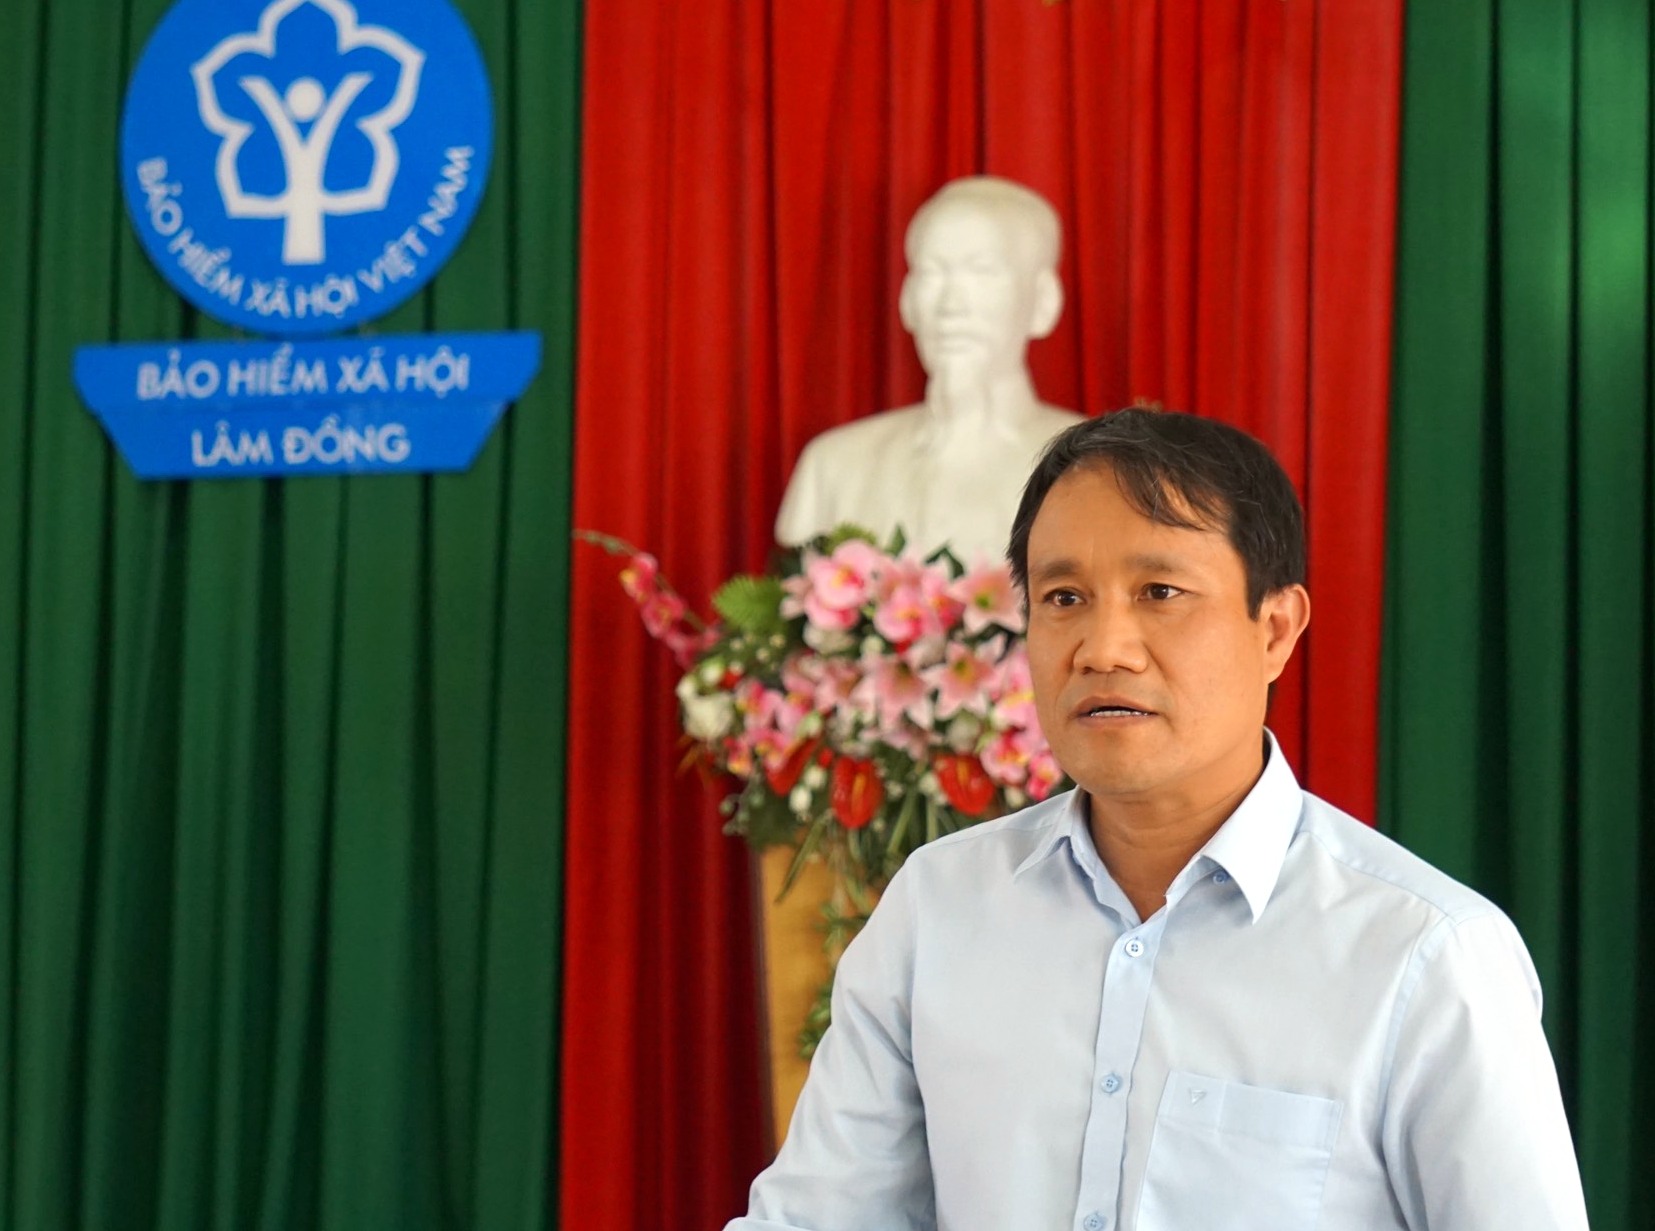 Ông Trần Văn Sơn –Phó Giám đốc BHXH Lâm Đồng chủ trì hội nghị tại đầu cầu BHXH tỉnh